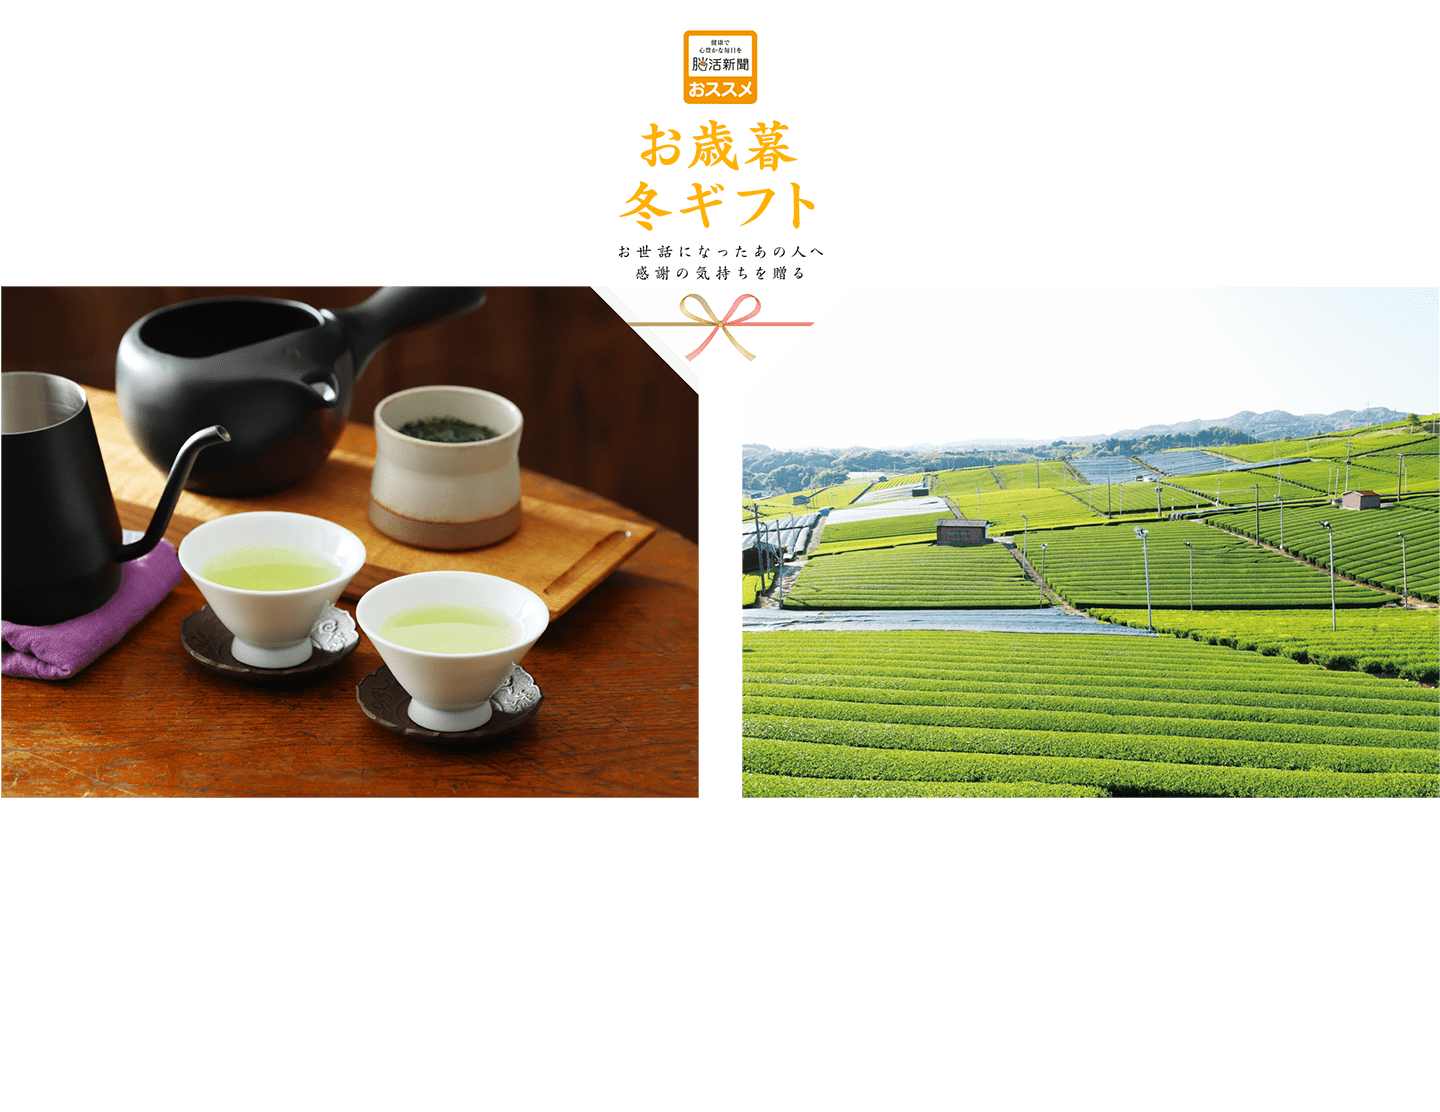 創業100年の牛島製茶八女茶セット 脳活新聞と福岡県八女市の牛島製茶がタイアップして八女茶ギフトセットをご用意しました。大正十年創業の牛島製茶のお茶を詰め合わせたギフトセットです。感謝の気持ちをギフトに込めて贈ってみませんか。